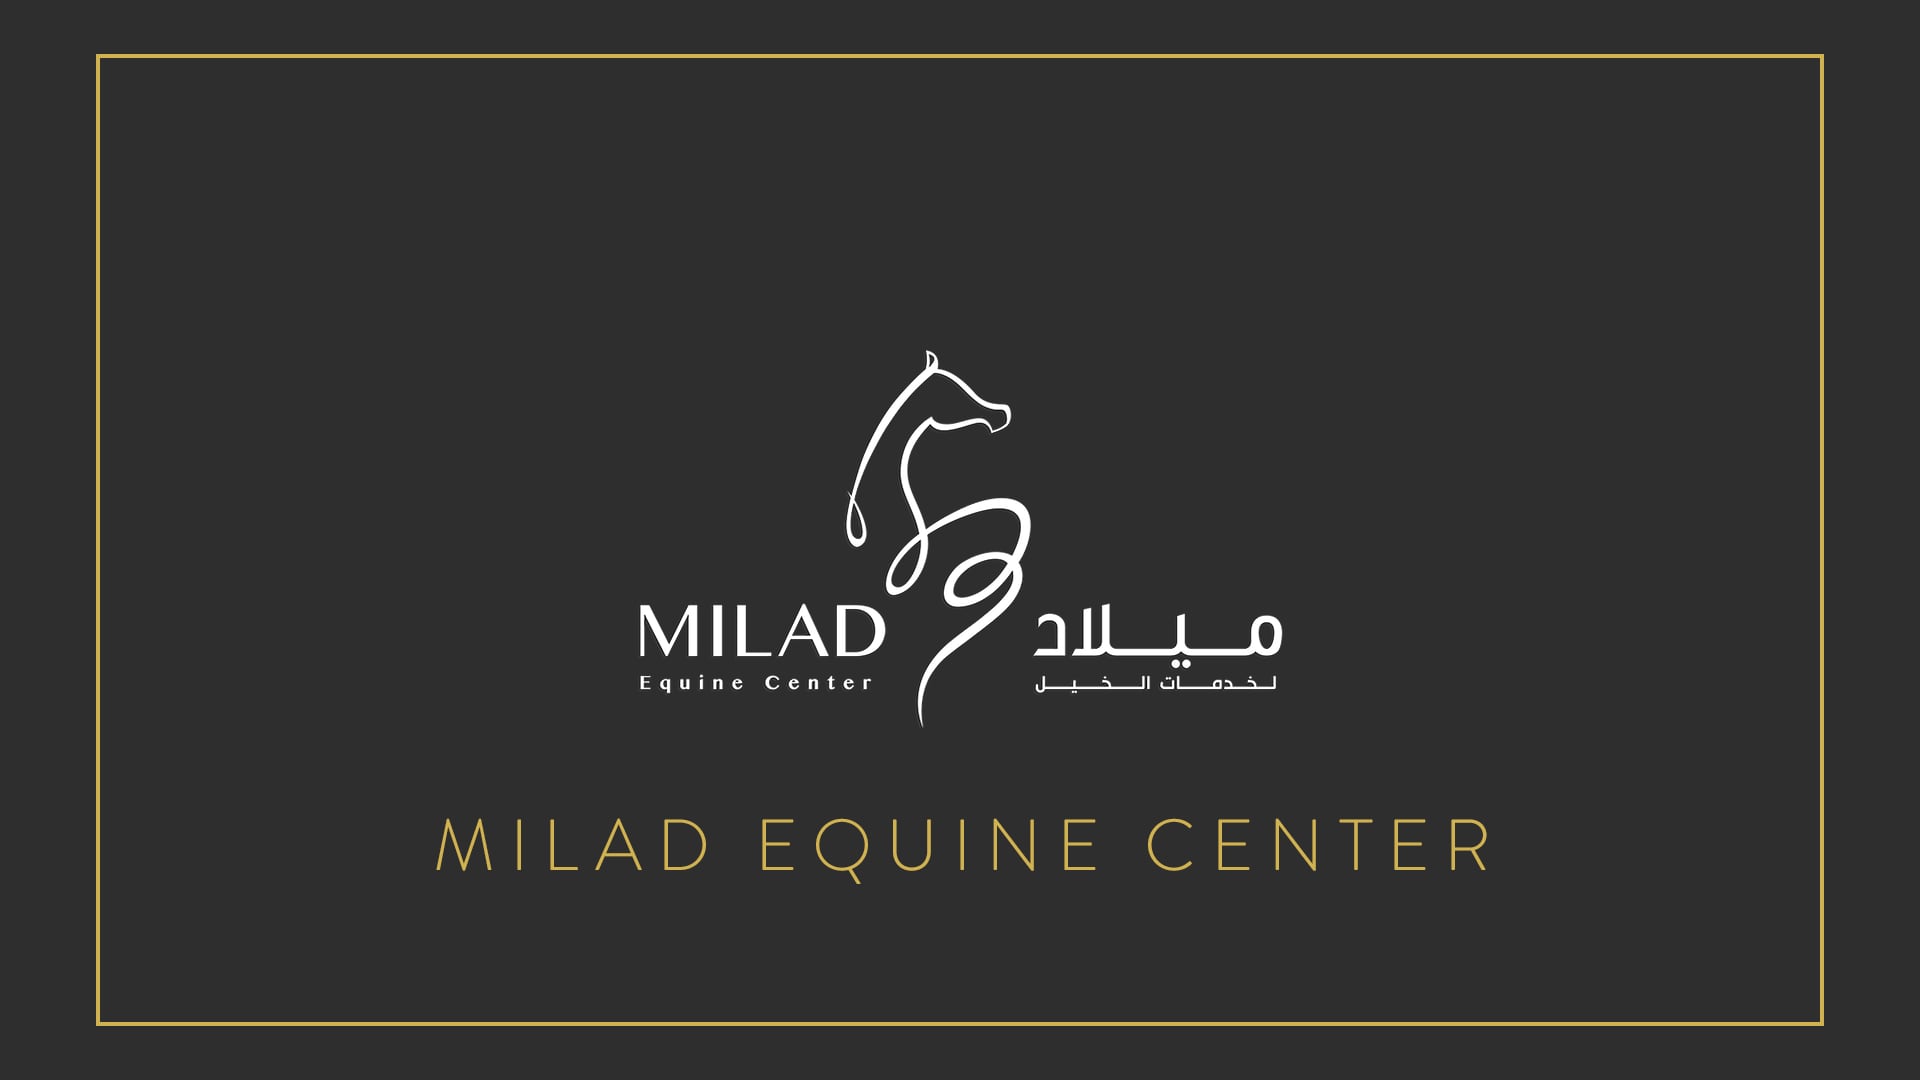 Milad Equine Center - Official Video